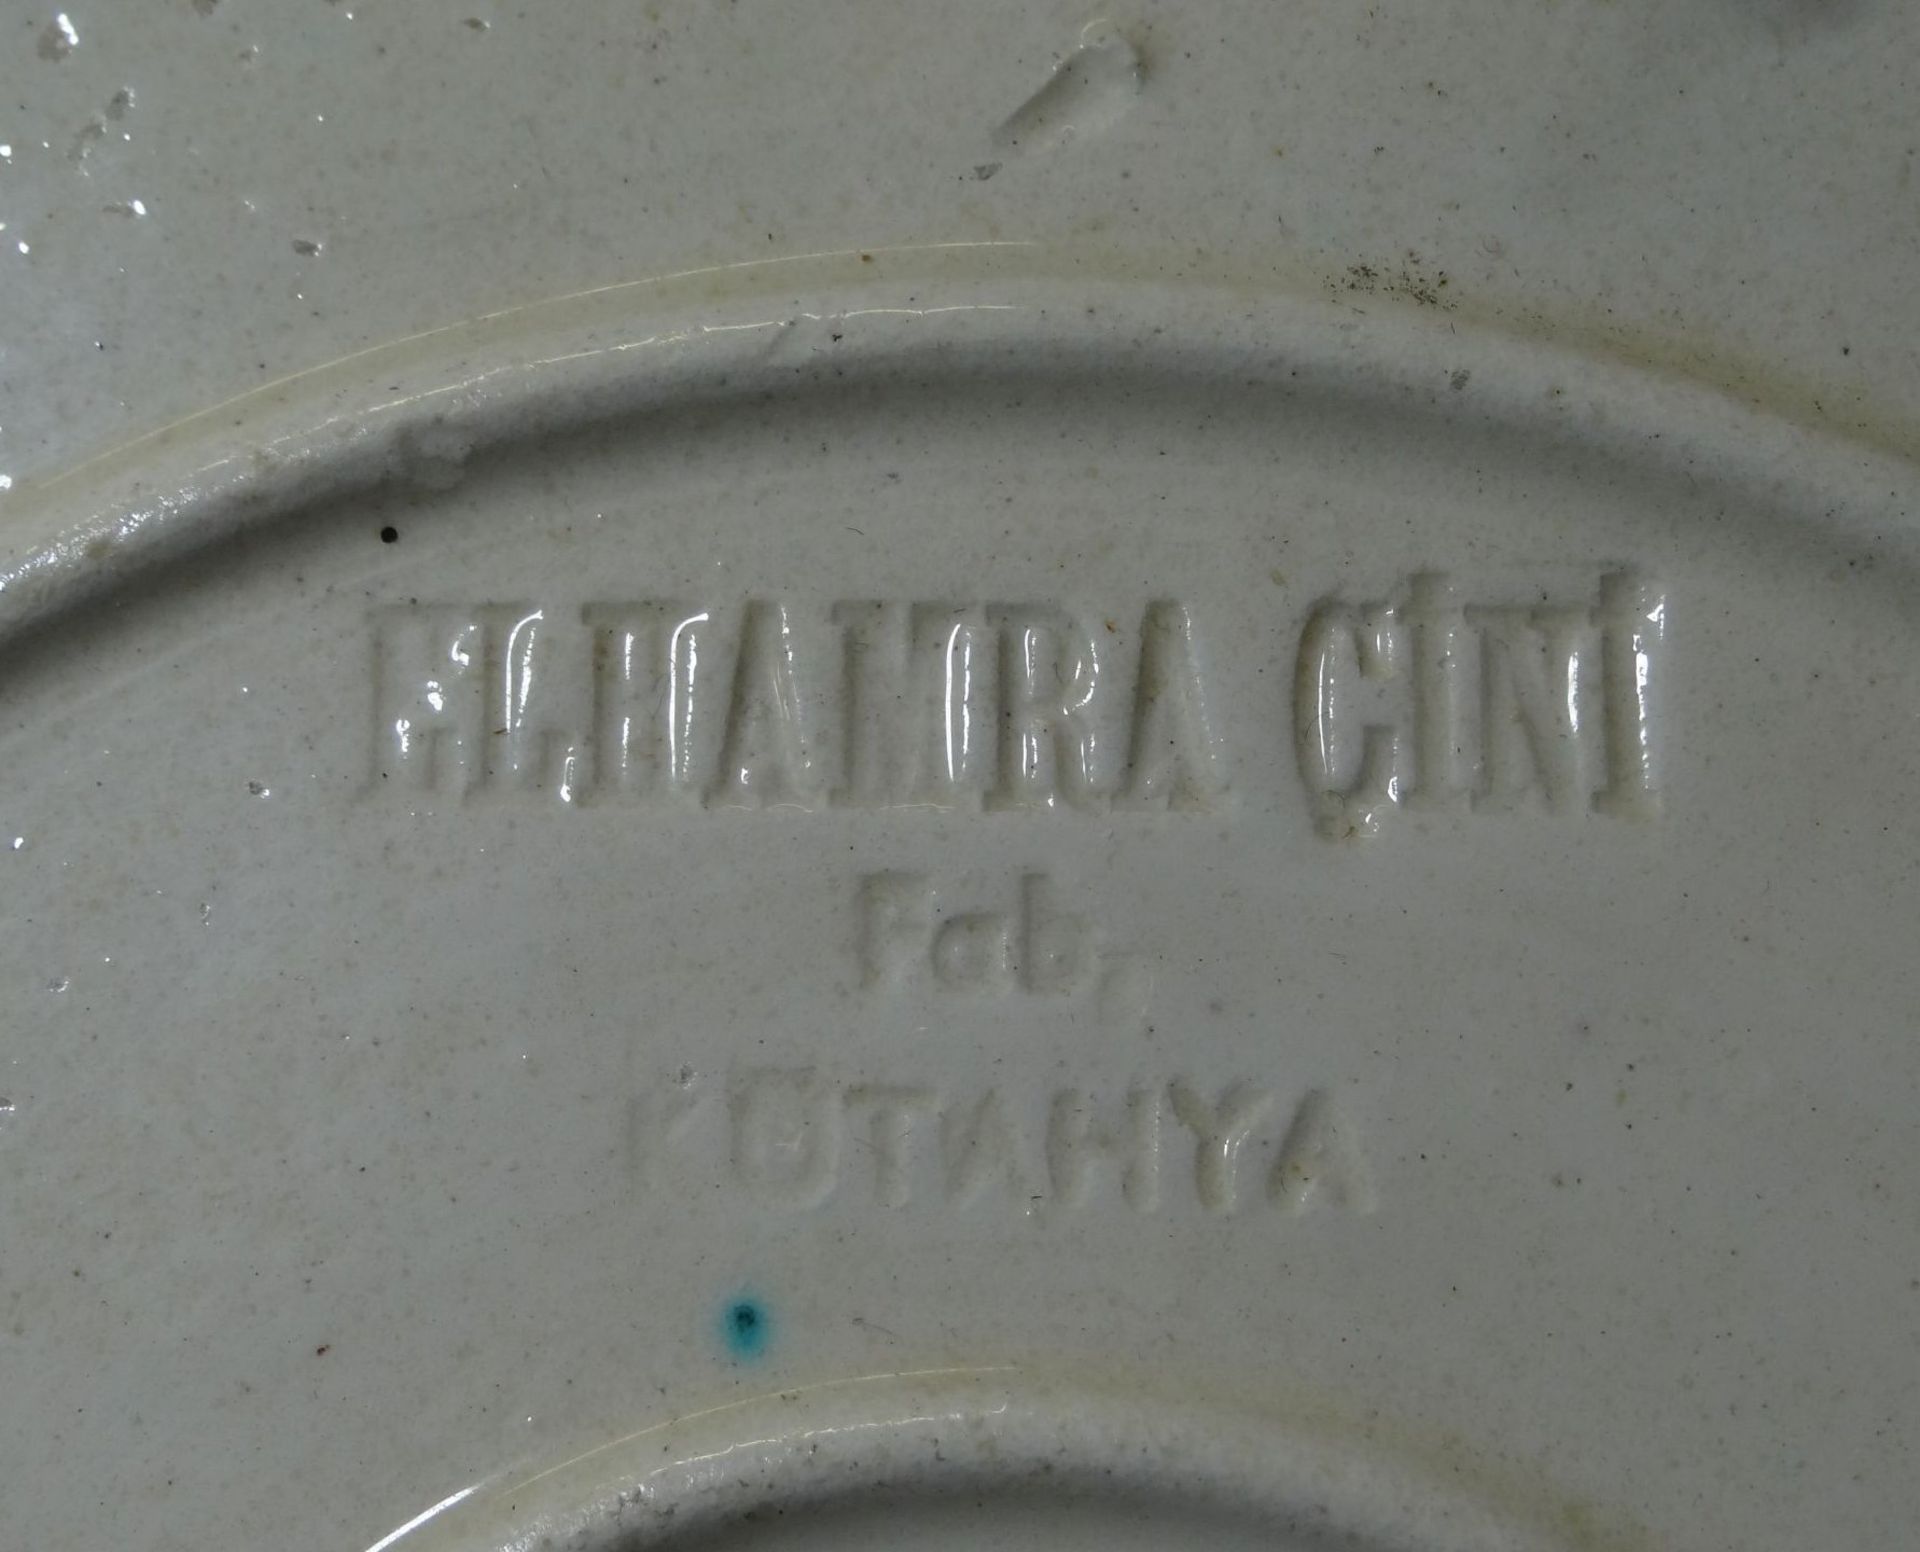 KUTAHYA Wandteller Keramik "Elhamra Cini" handbemalt, D-33 cm - Bild 3 aus 4